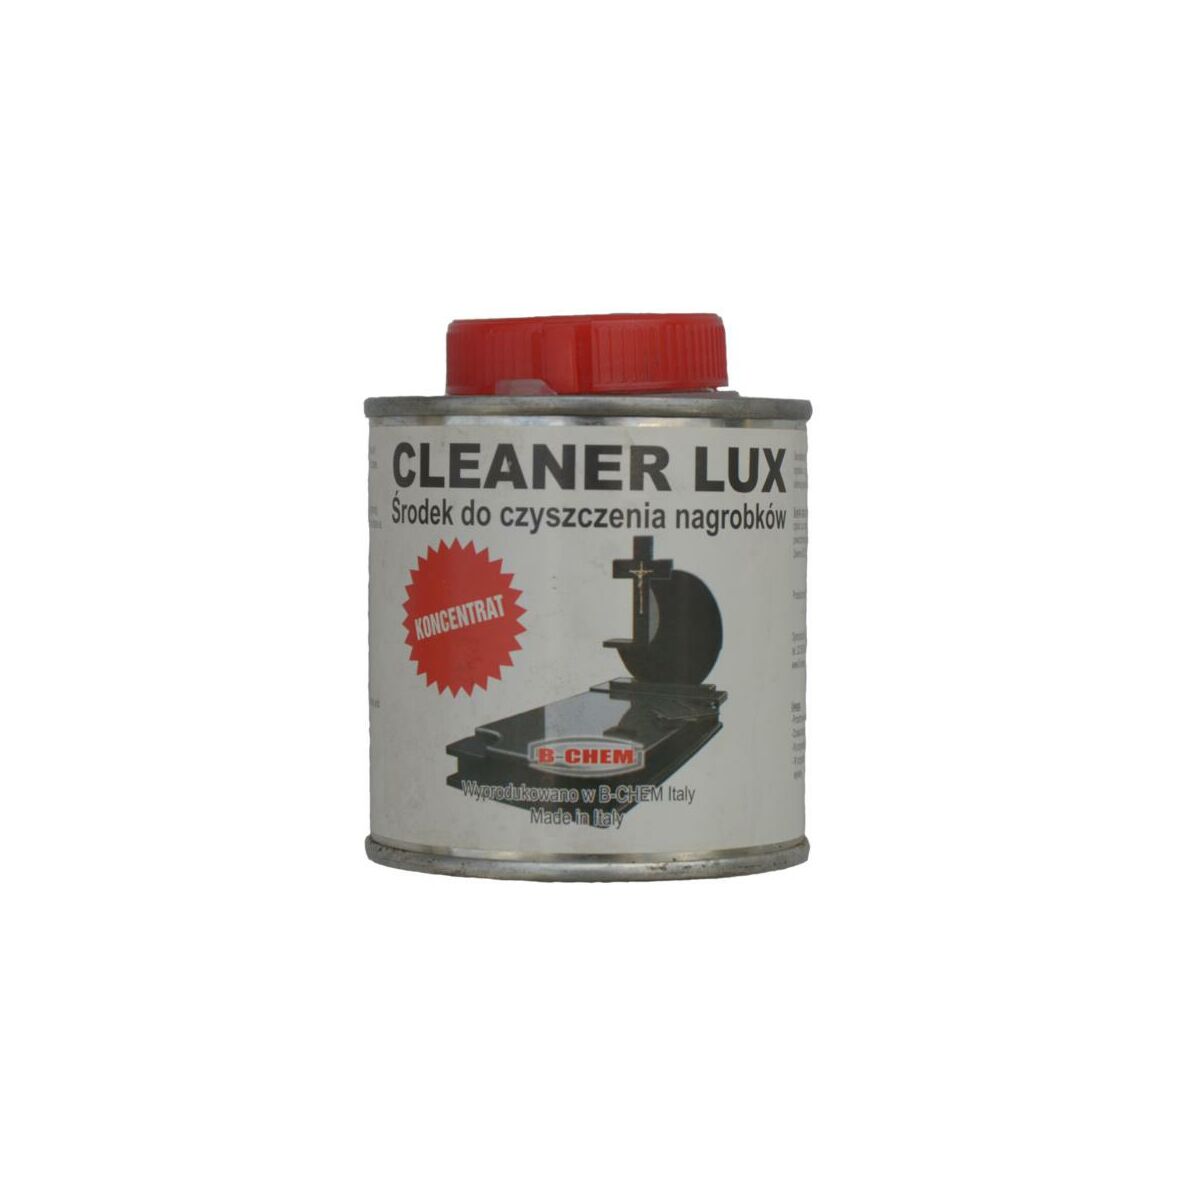 Srodek Czyszczacy Cleaner Lux B Chem Impregnaty W Atrakcyjnej Cenie W Sklepach Leroy Merlin